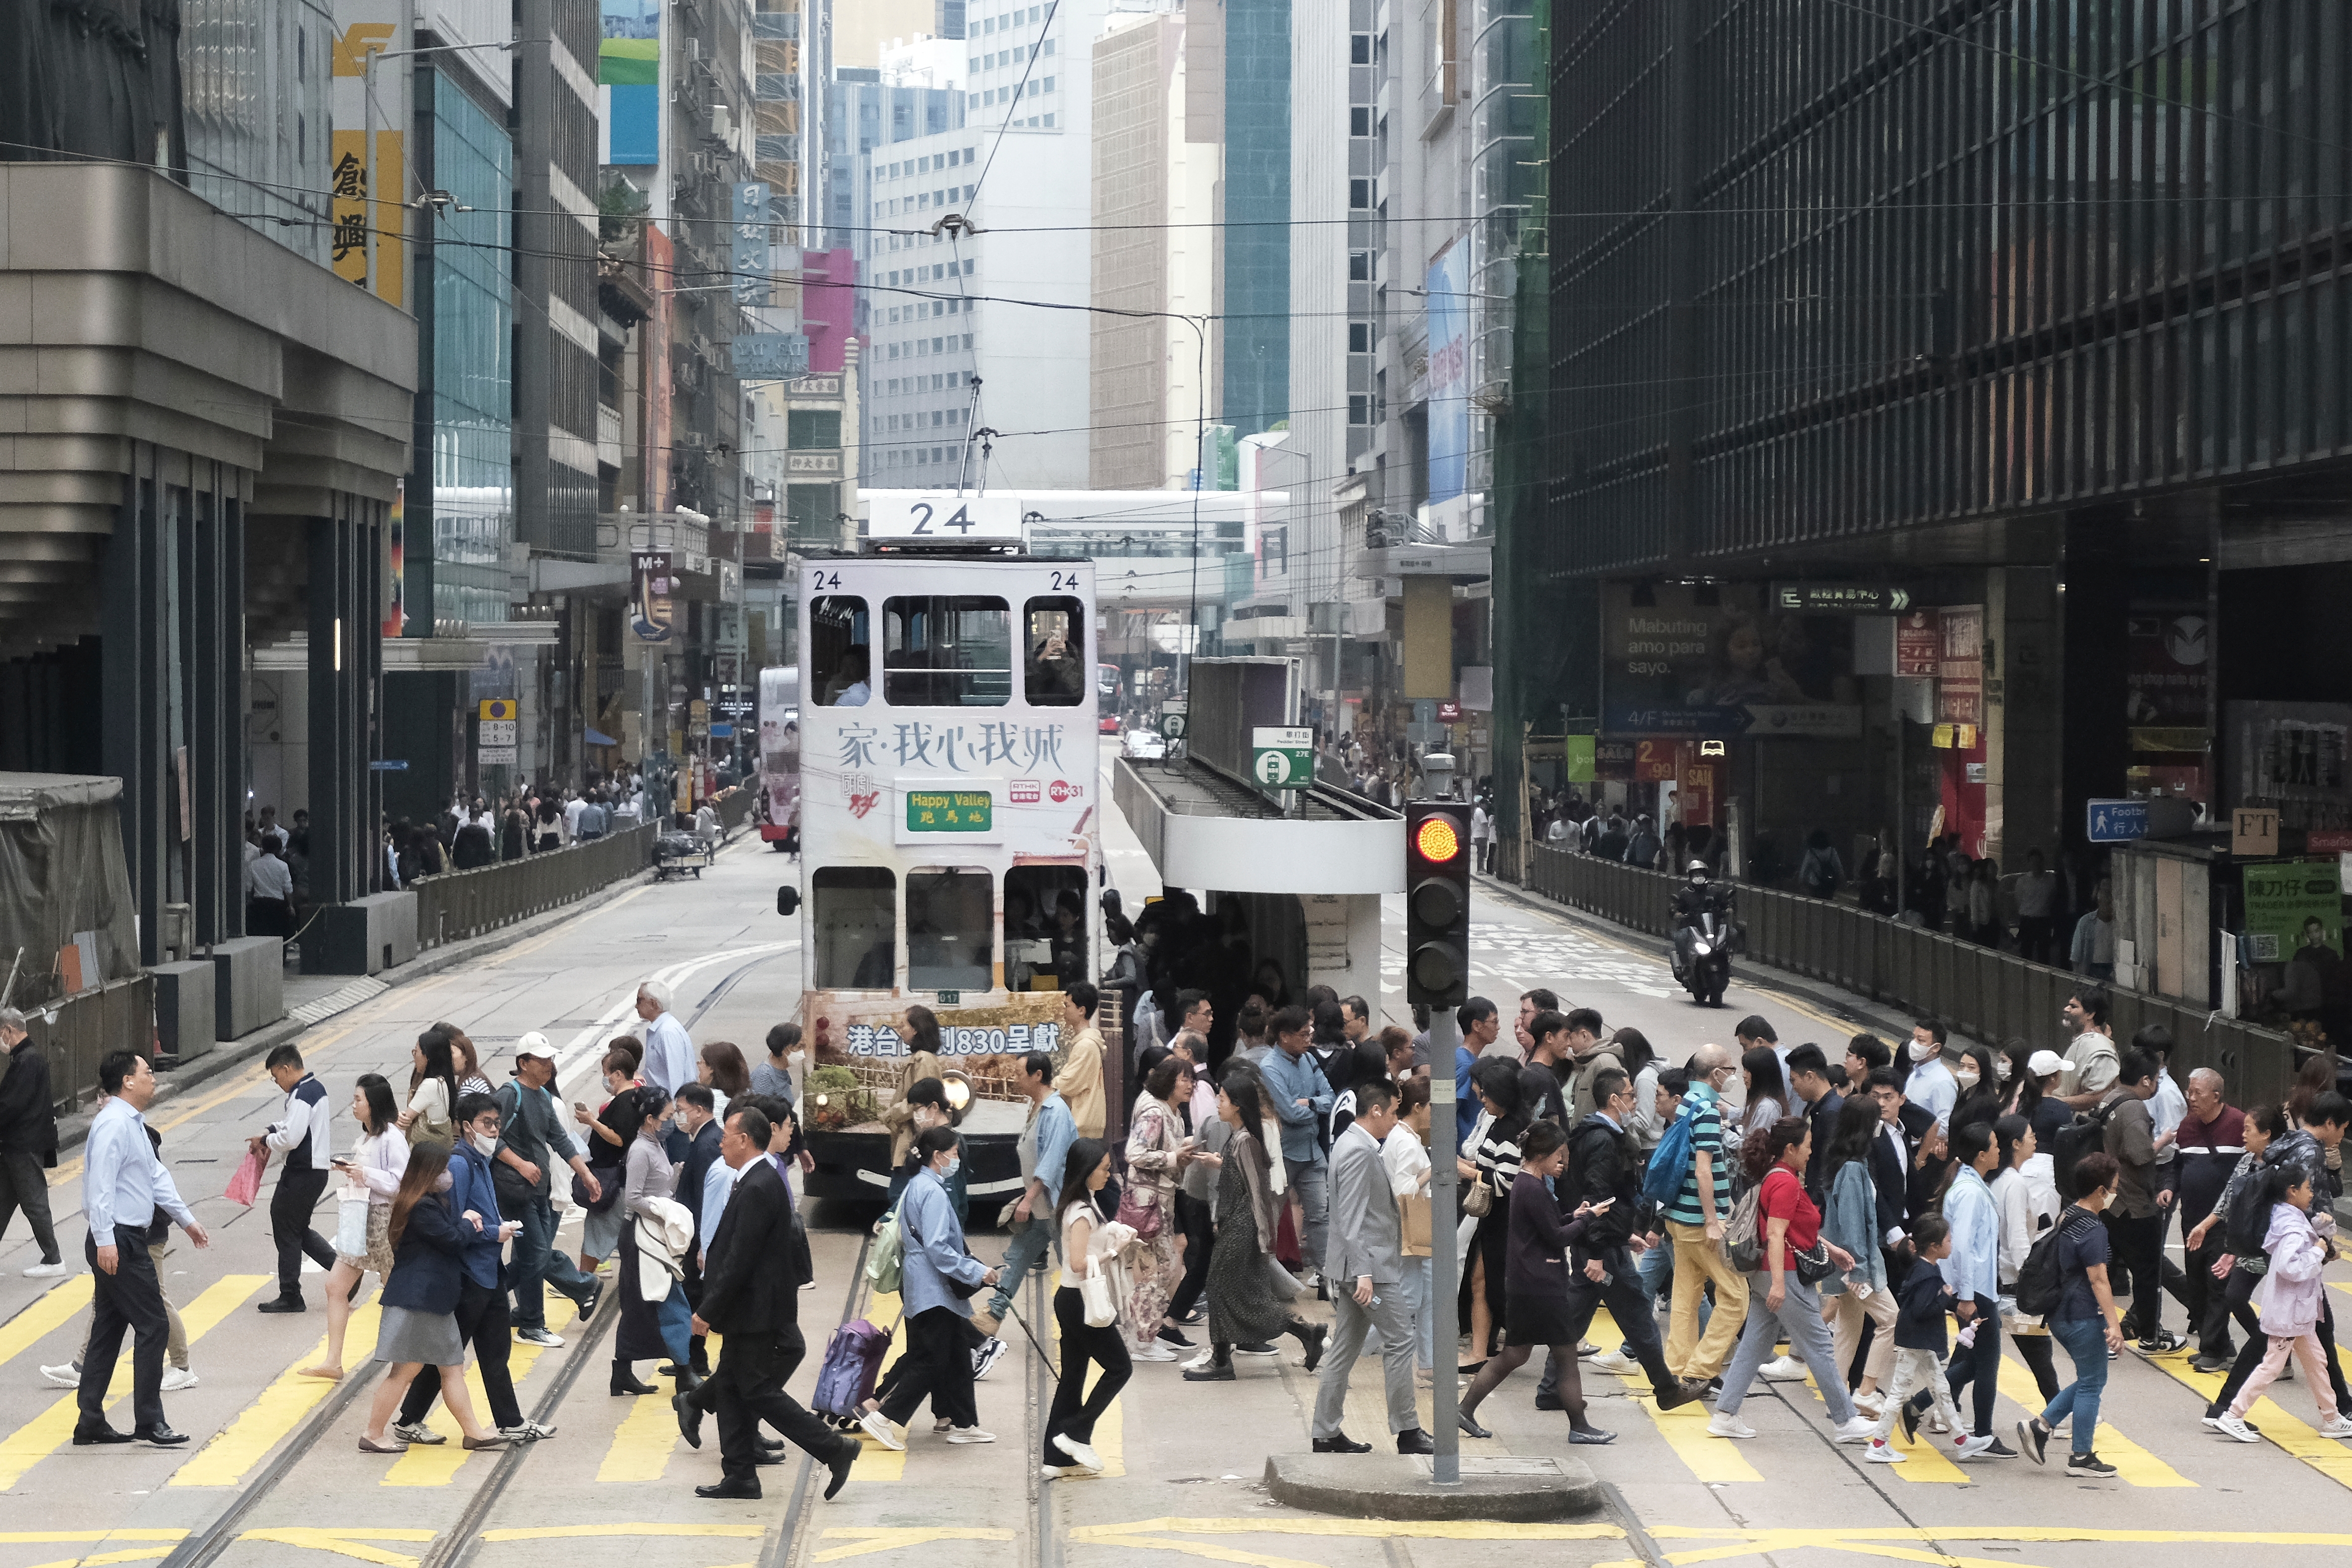 人材流出続く香港で「リクルート制度」が強化。多様化目指し、東南アジアや欧州を視野に